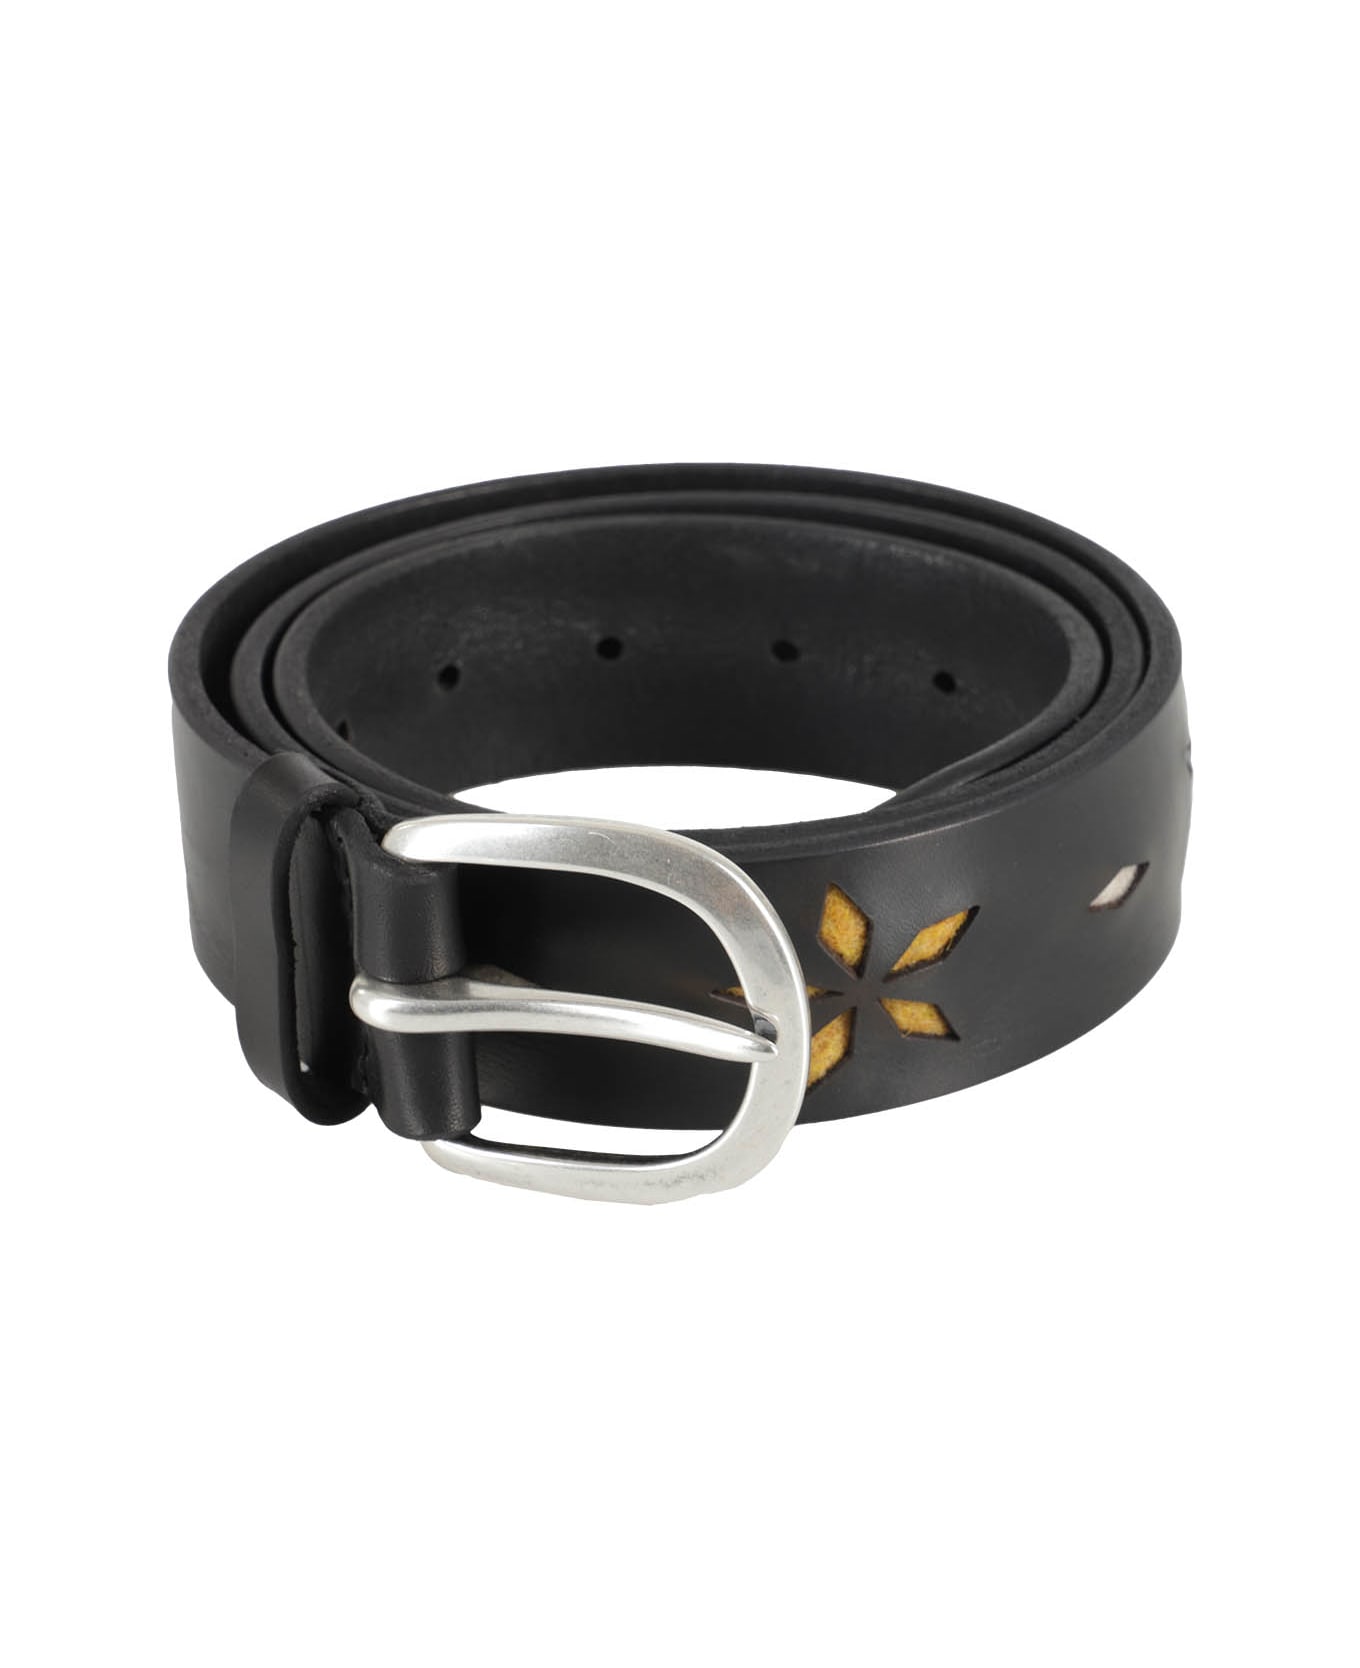 Orciani Leather Belt - Ner Nero